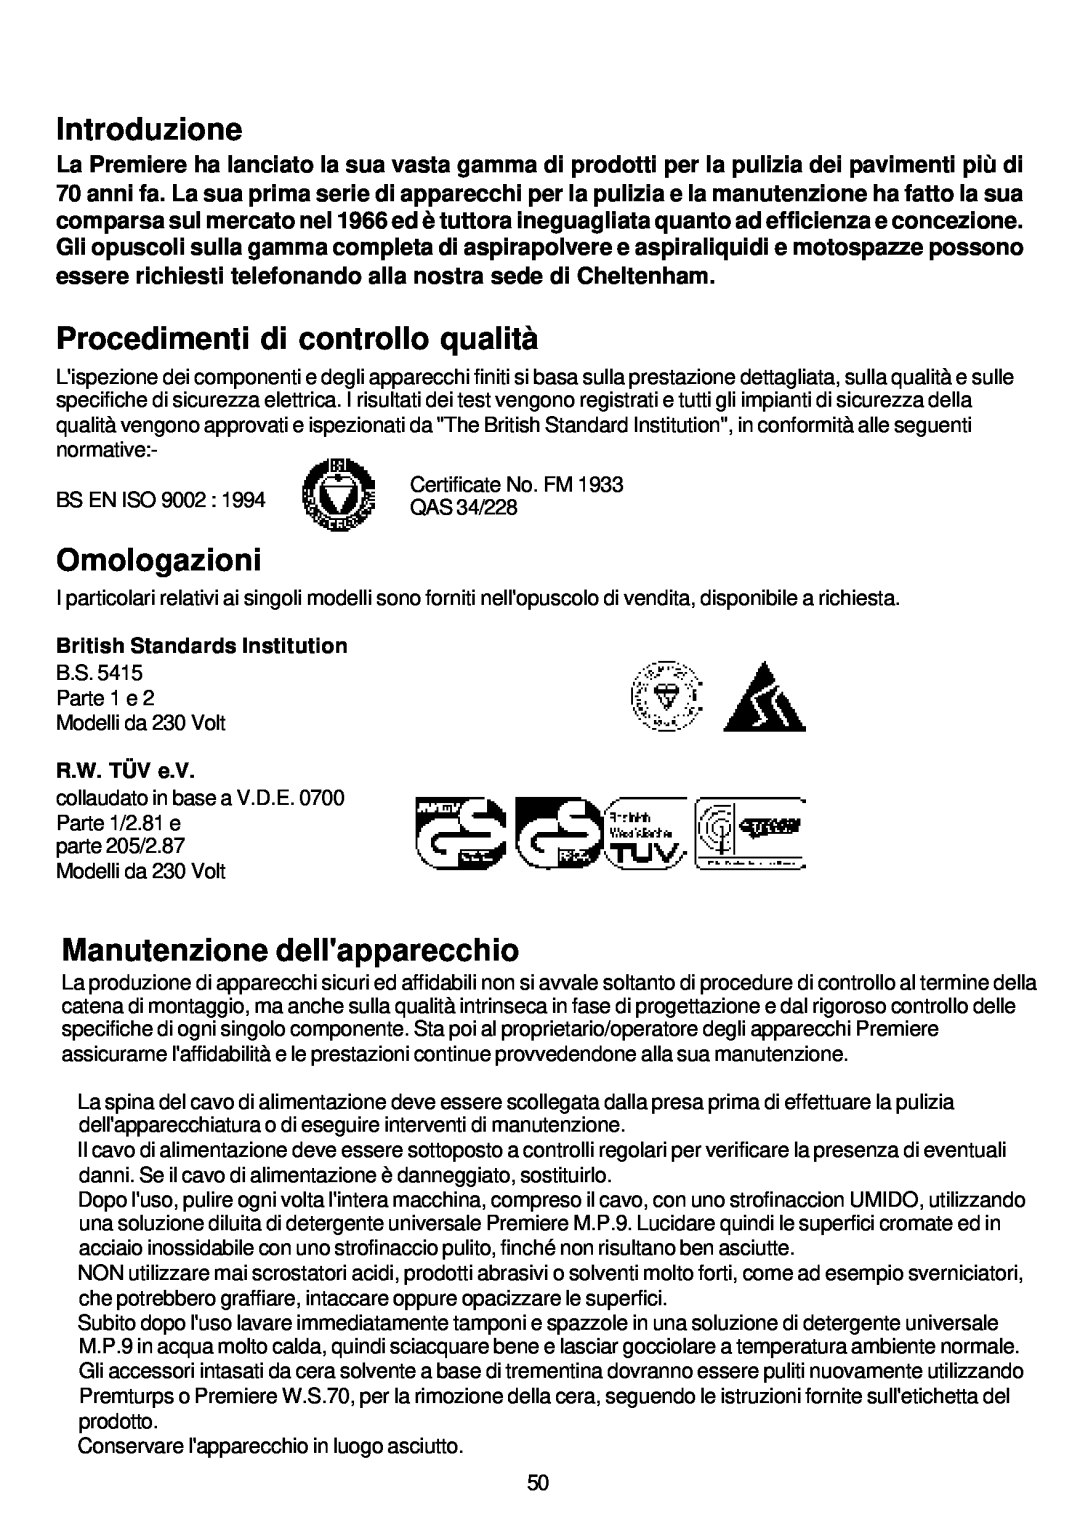 Premier HV 15 Introduzione, Procedimenti di controllo qualità, Omologazioni, Manutenzione dellapparecchio, R.W. TÜV e.V 